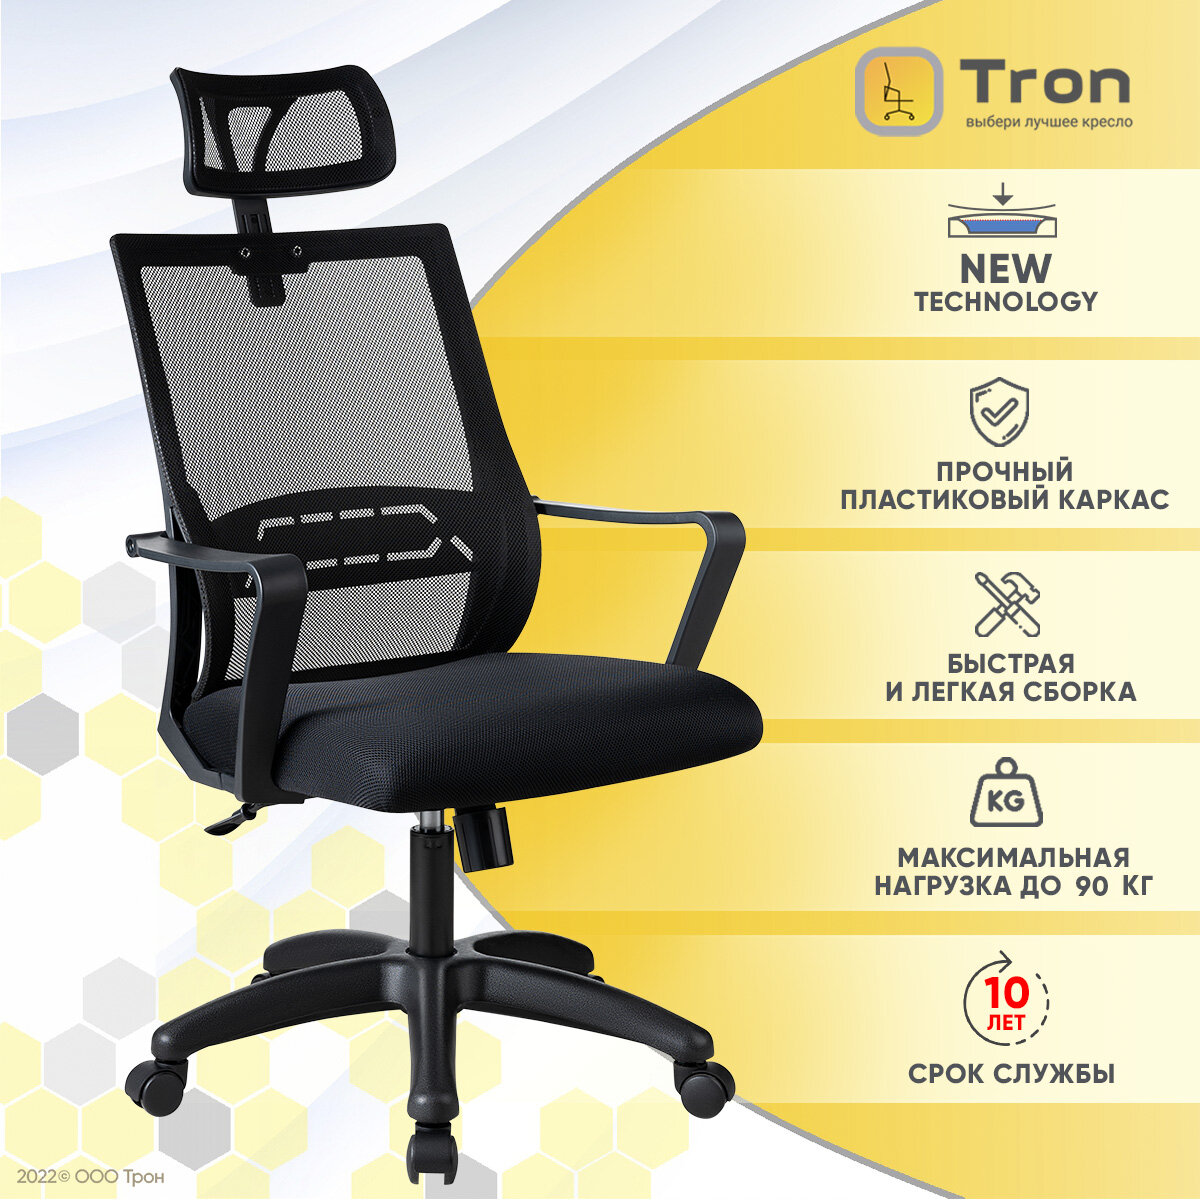 Кресло компьютерное офисное Tron P1 сетка черная Prestige